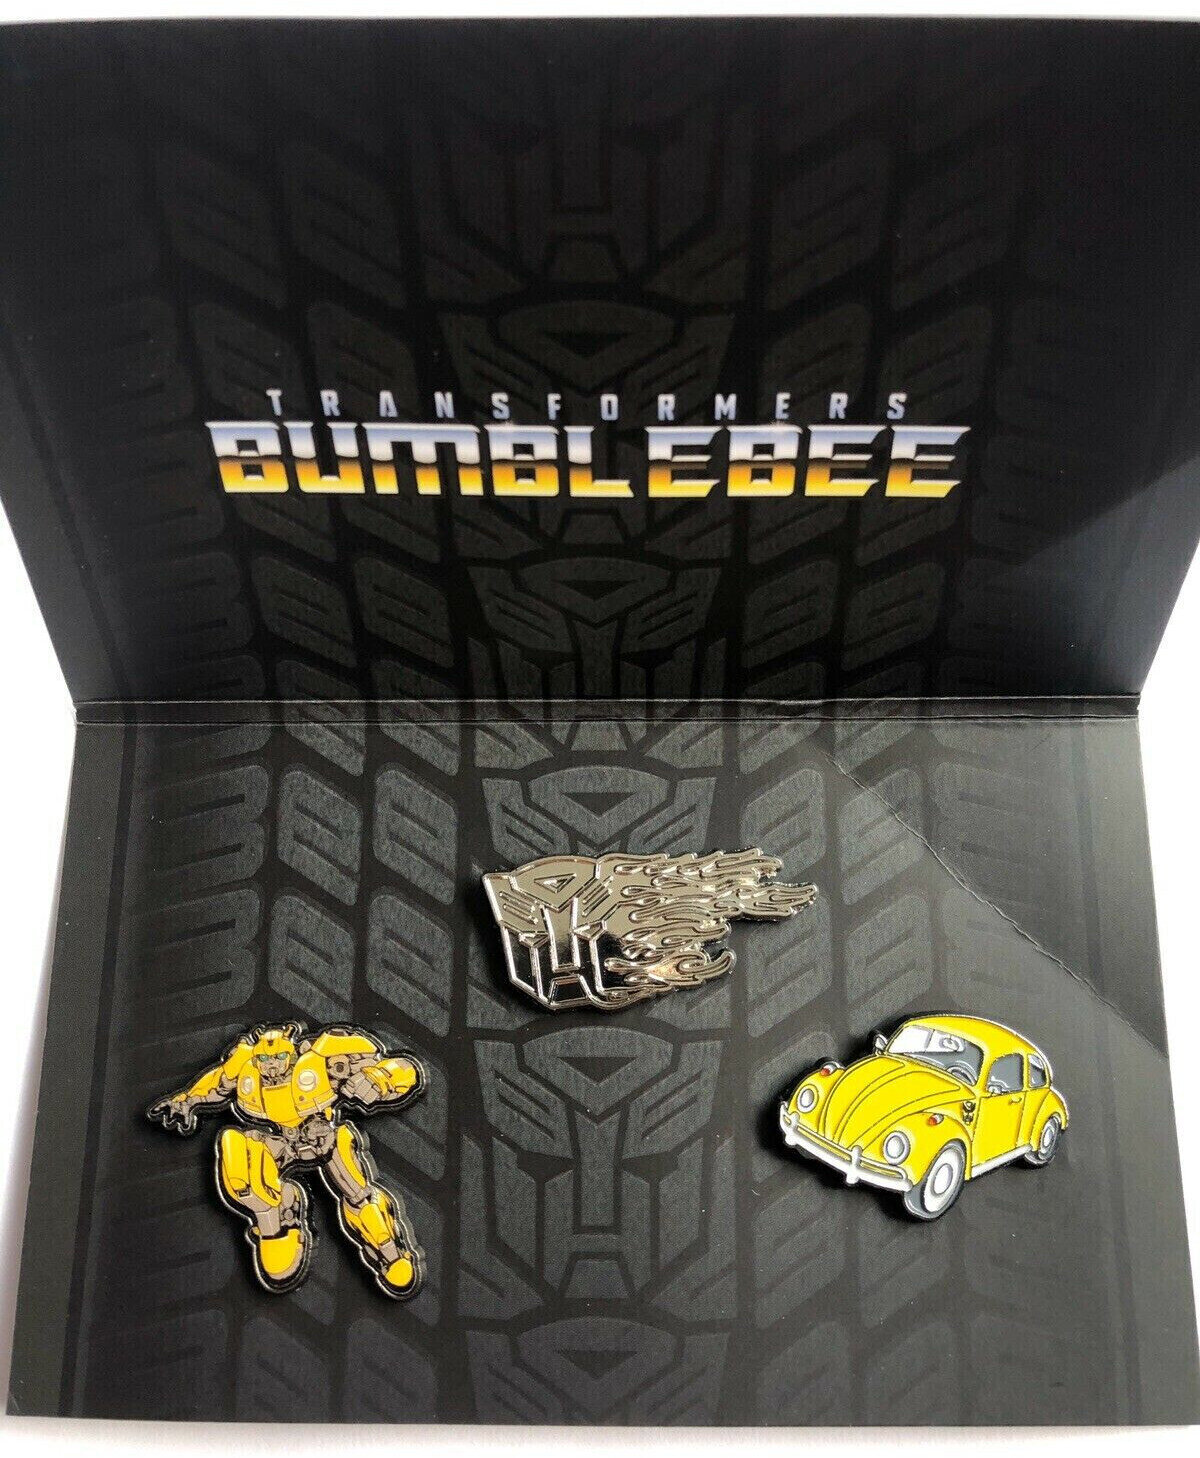 Kenteken Transformers Bumblebee Pin Badge Set